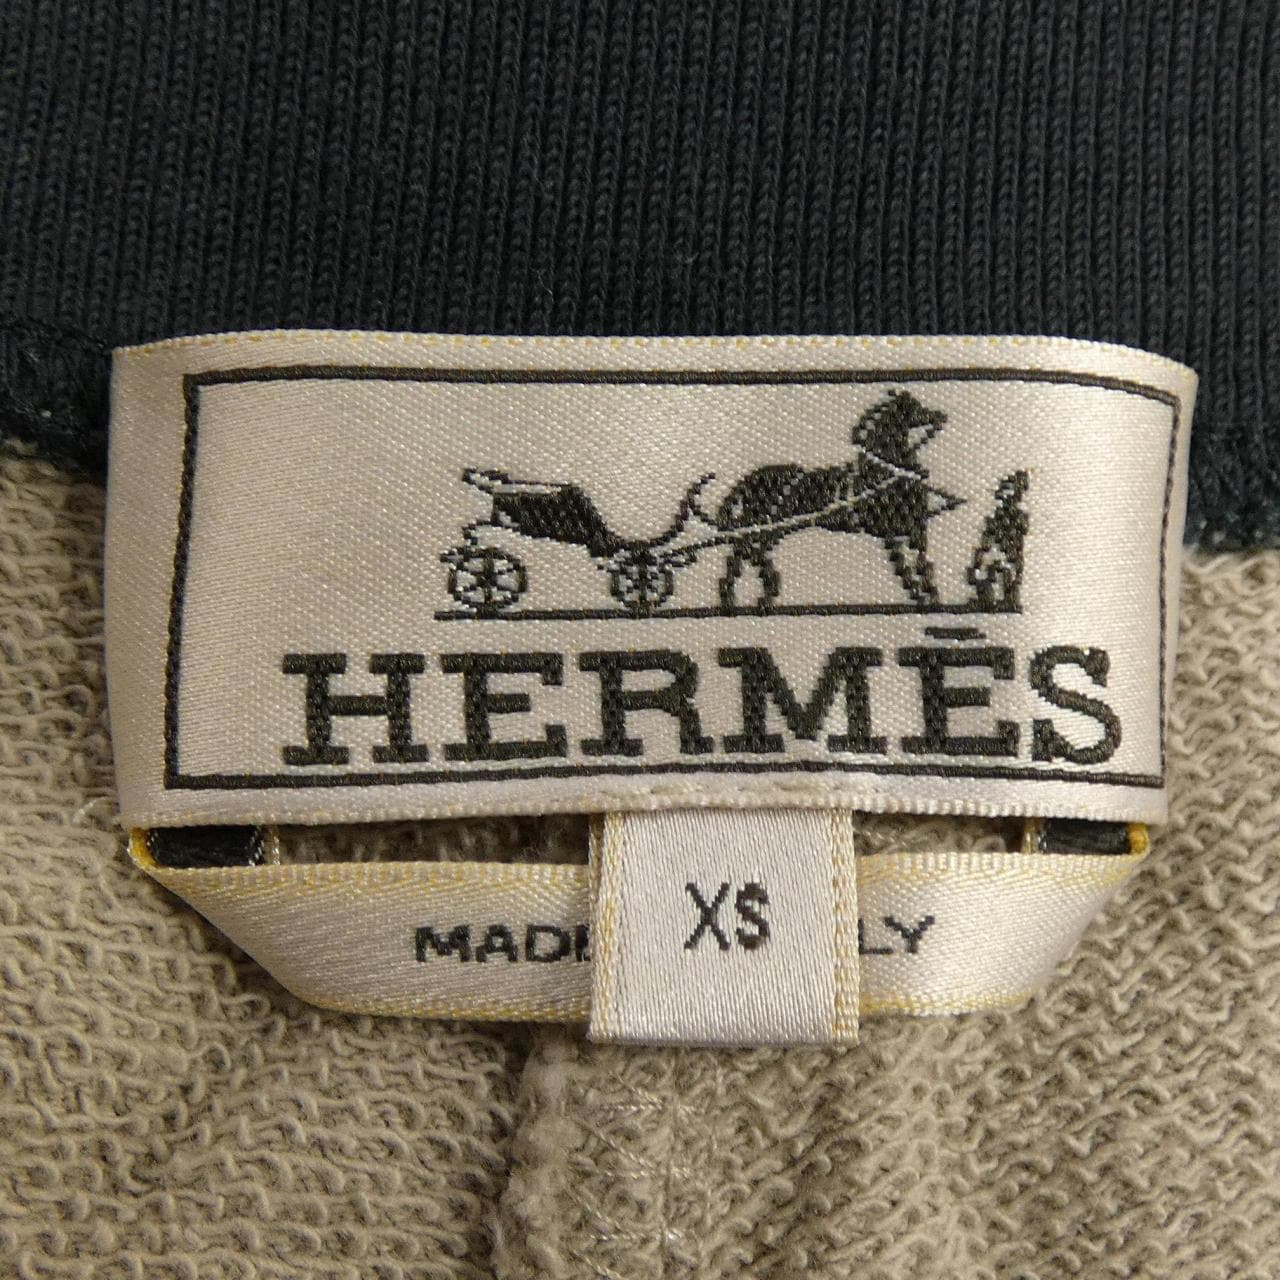 HERMES爱马仕短裤